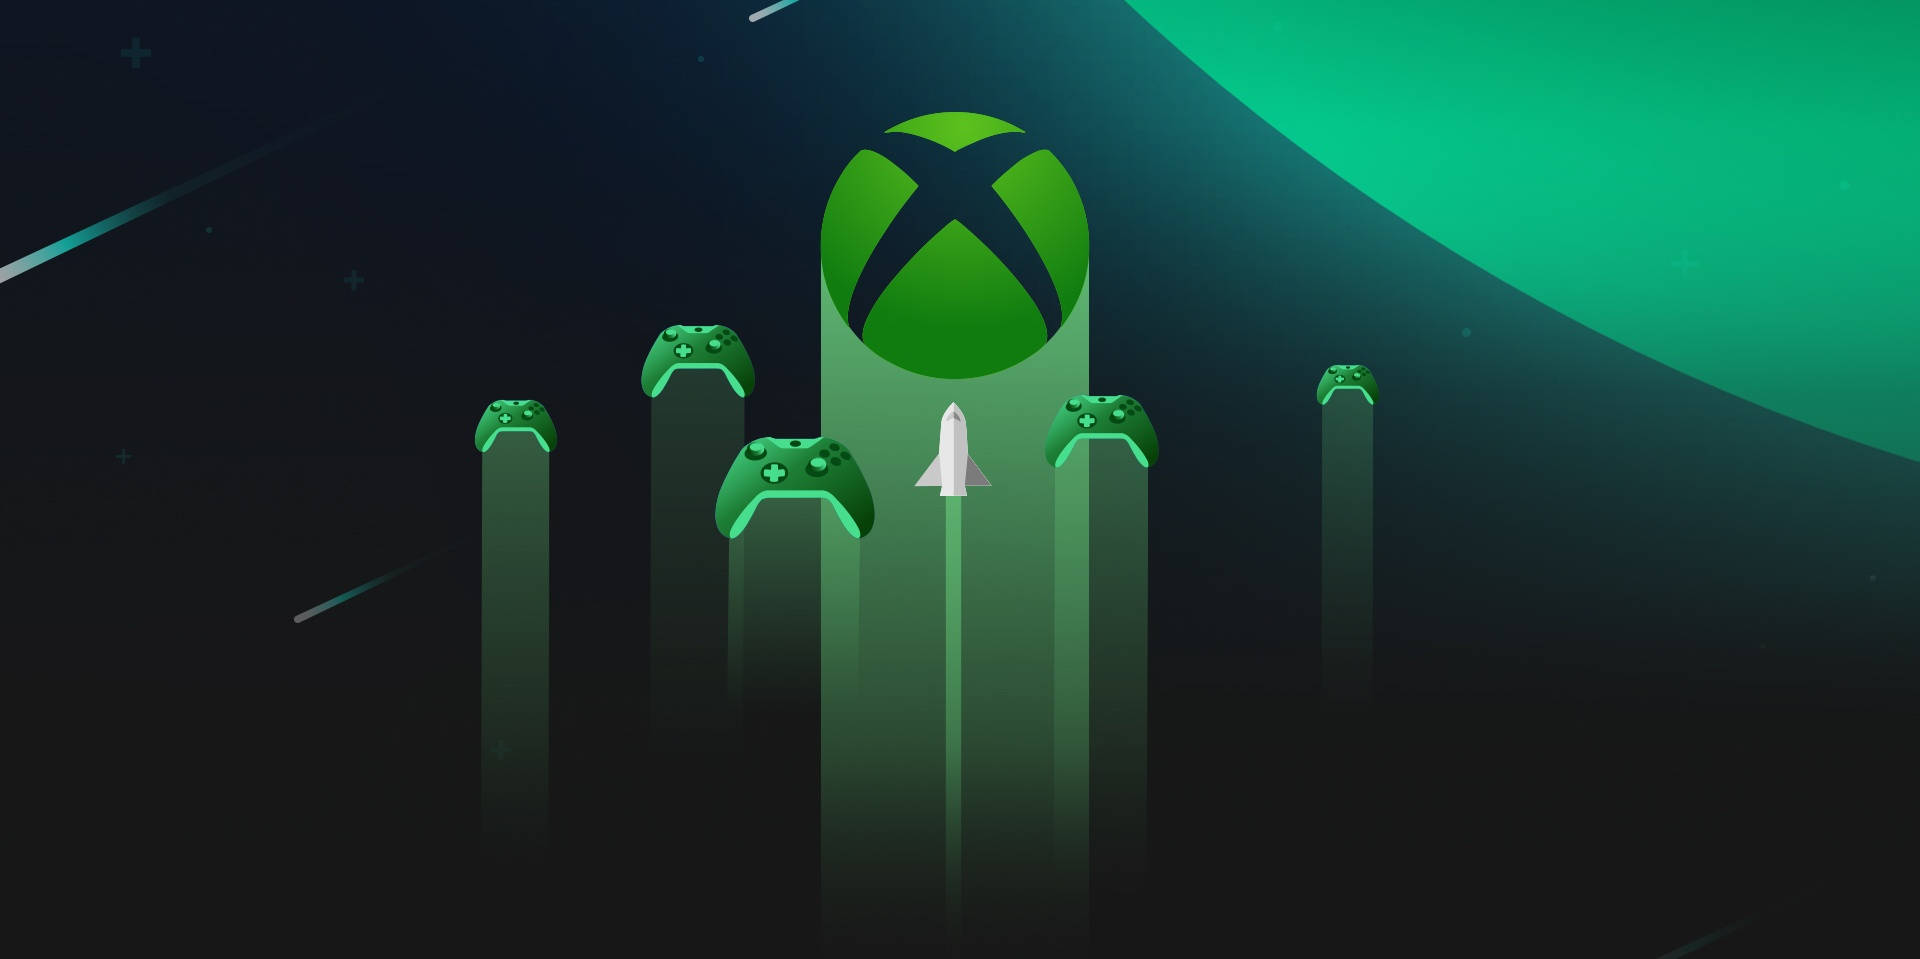 Hình nền Xbox Series X miễn phí: Đem đến trải nghiệm gaming tuyệt vời nhất với hình nền Xbox Series X tiên tiến nhất. Tải xuống miễn phí và trở thành người chiến thắng trong game ngay bây giờ!